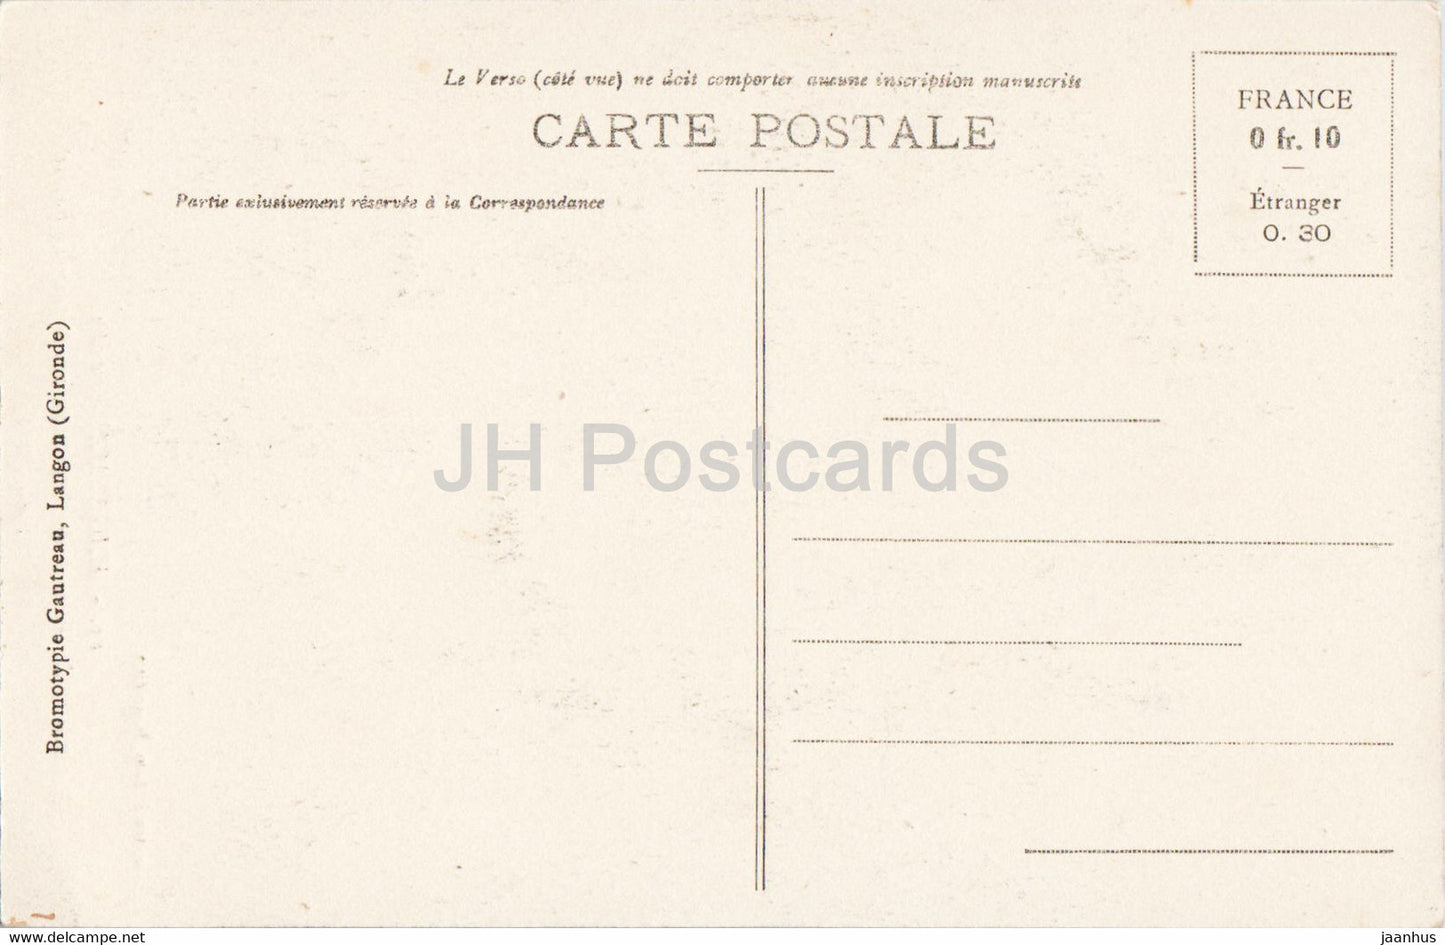 Hagetmau - Monument des Enfants de Hagetmau morts pour la Patrie 1914-1918 - 15 - carte postale ancienne - France - inutilisée